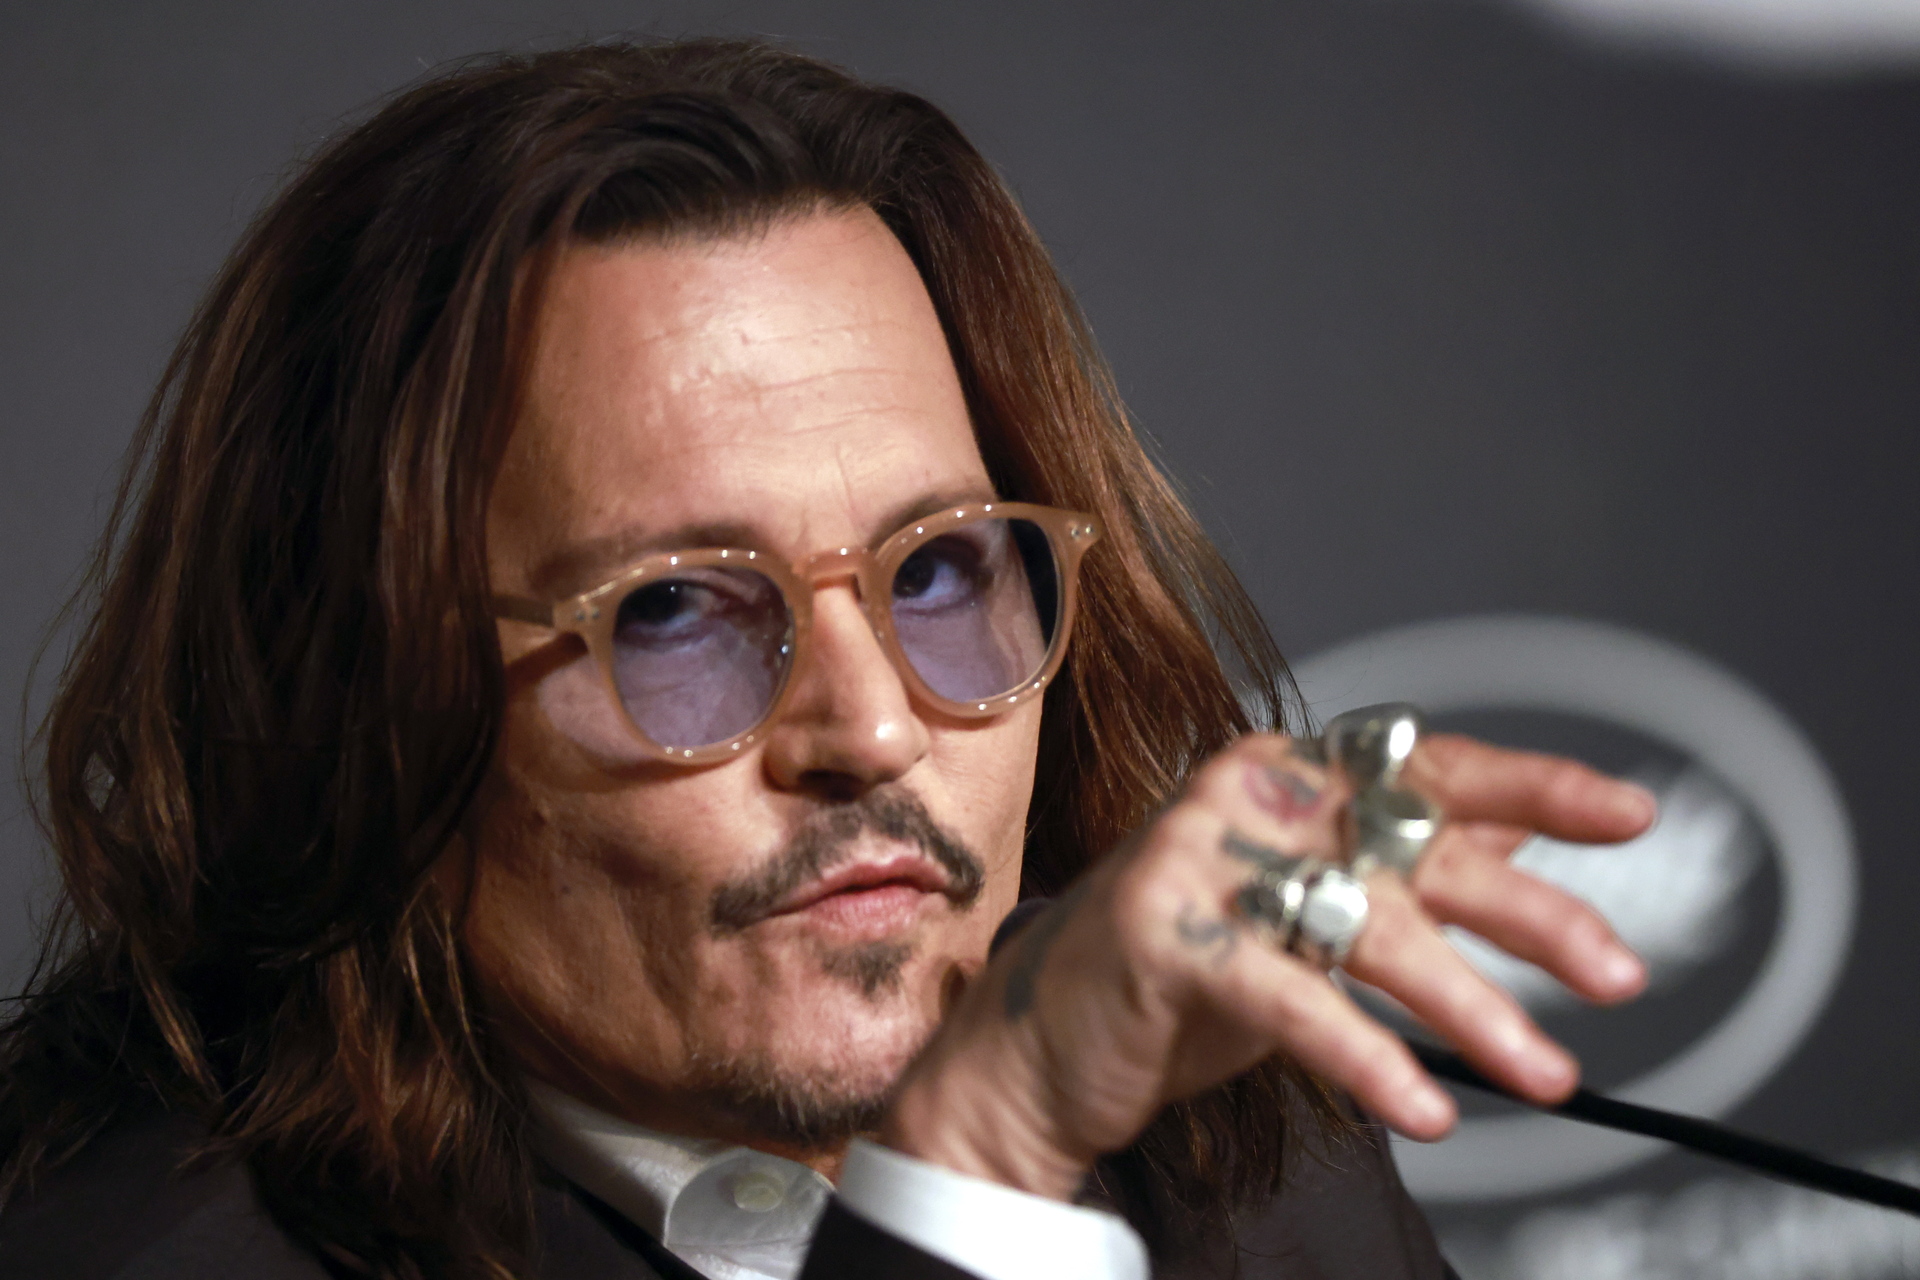 Johnny Depp solicita préstamo millonario para arreglar su casa, según medio británico